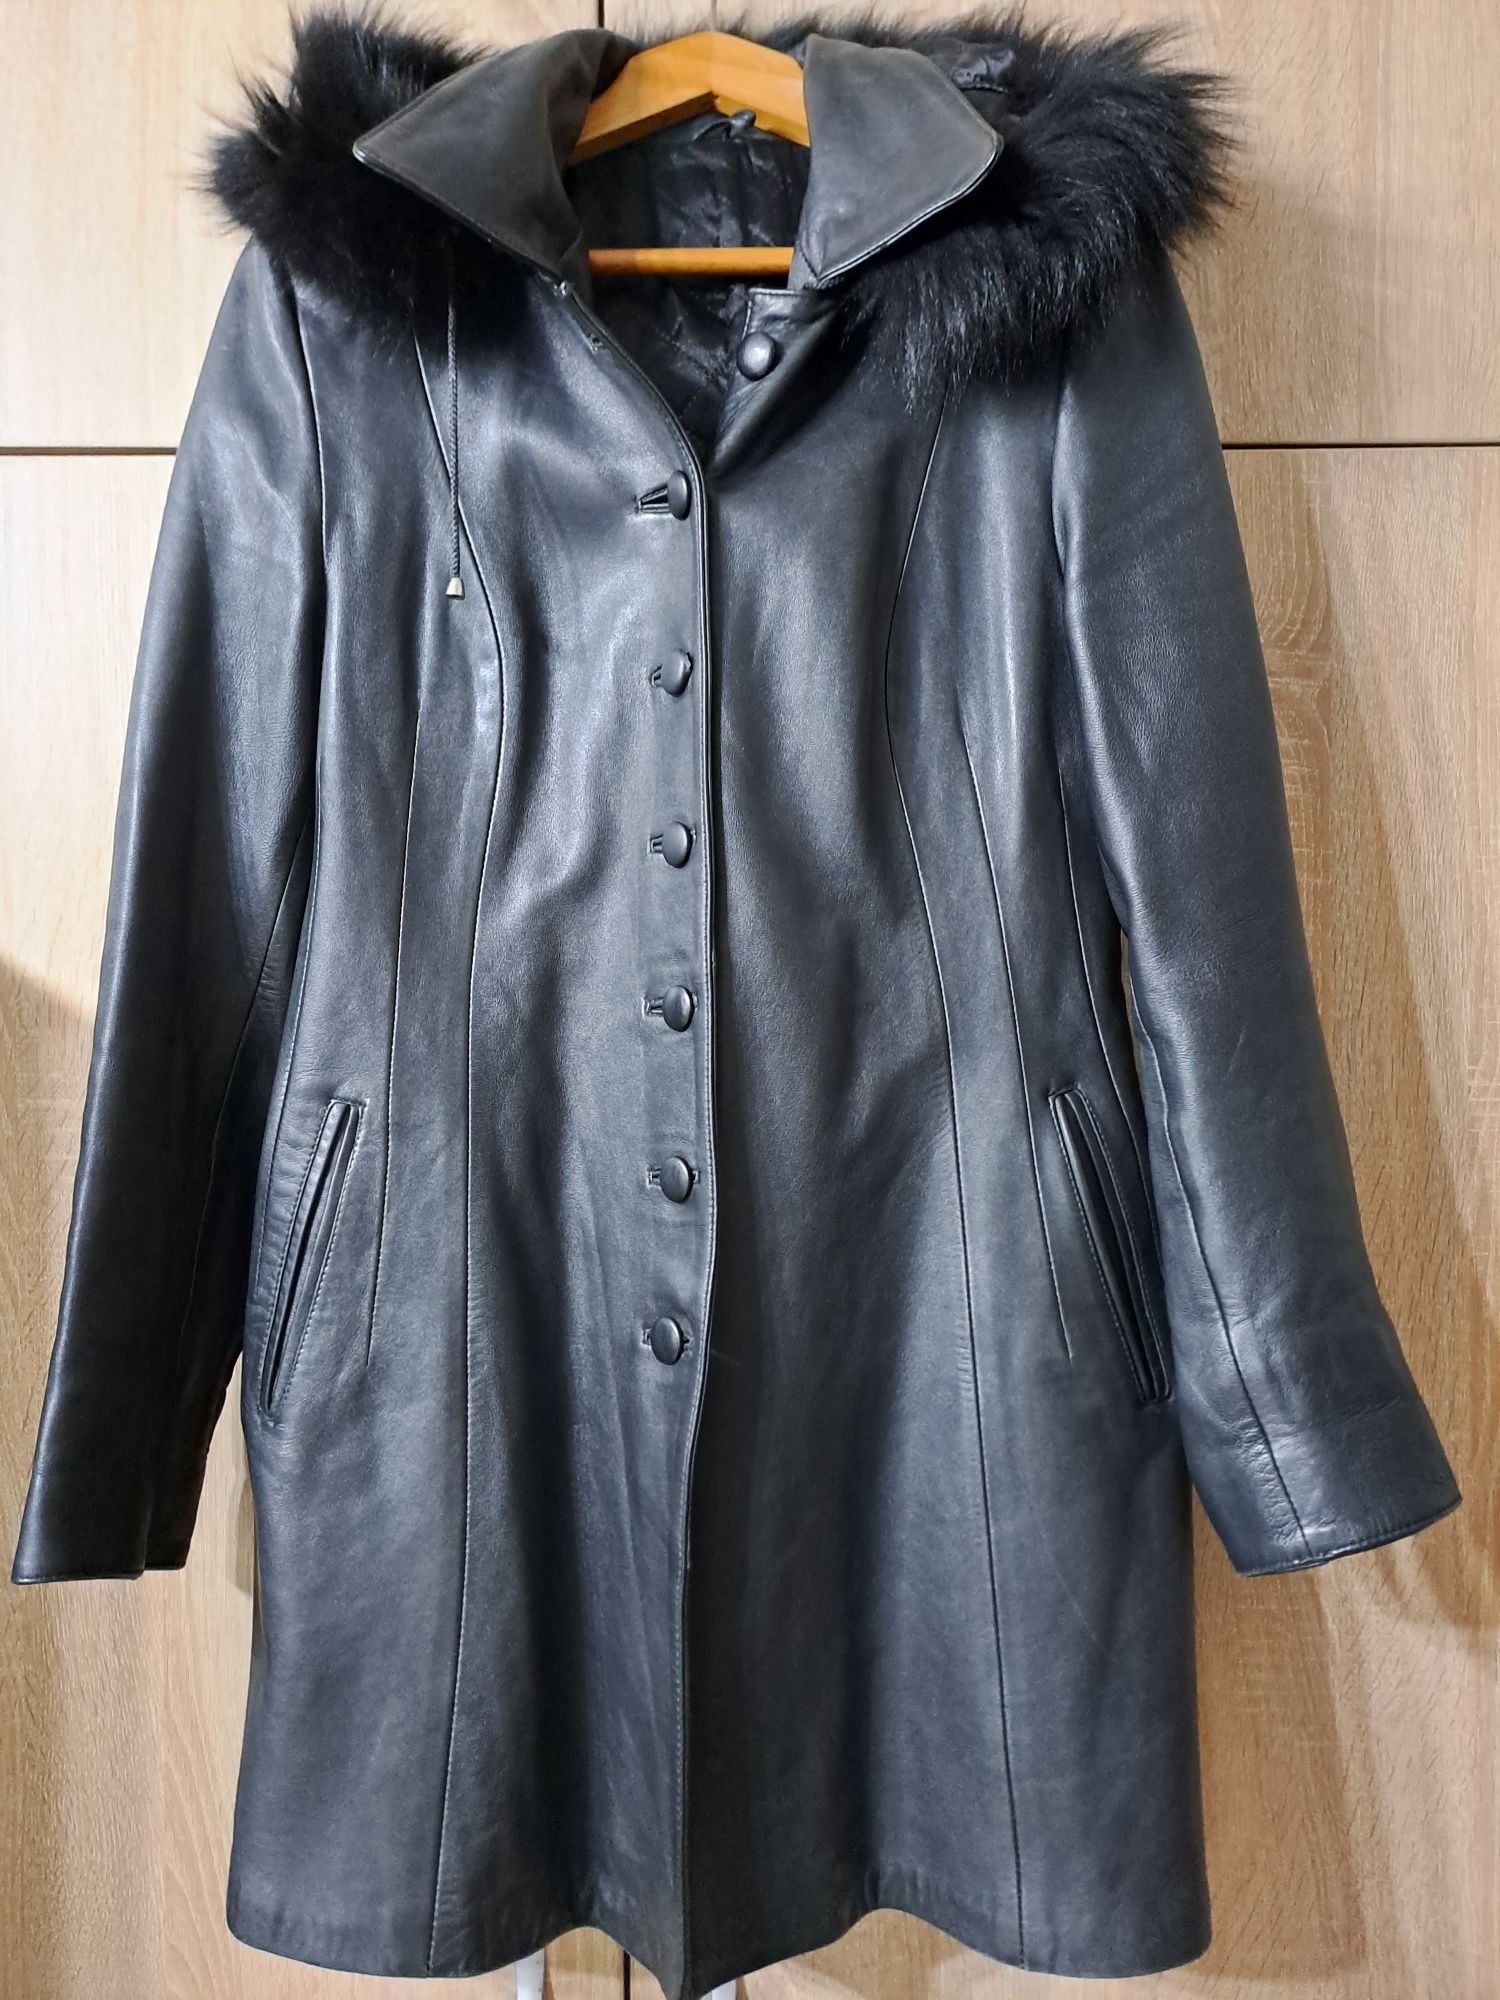 Дамско палто от естествена кожа, размер Л, цена 80лв